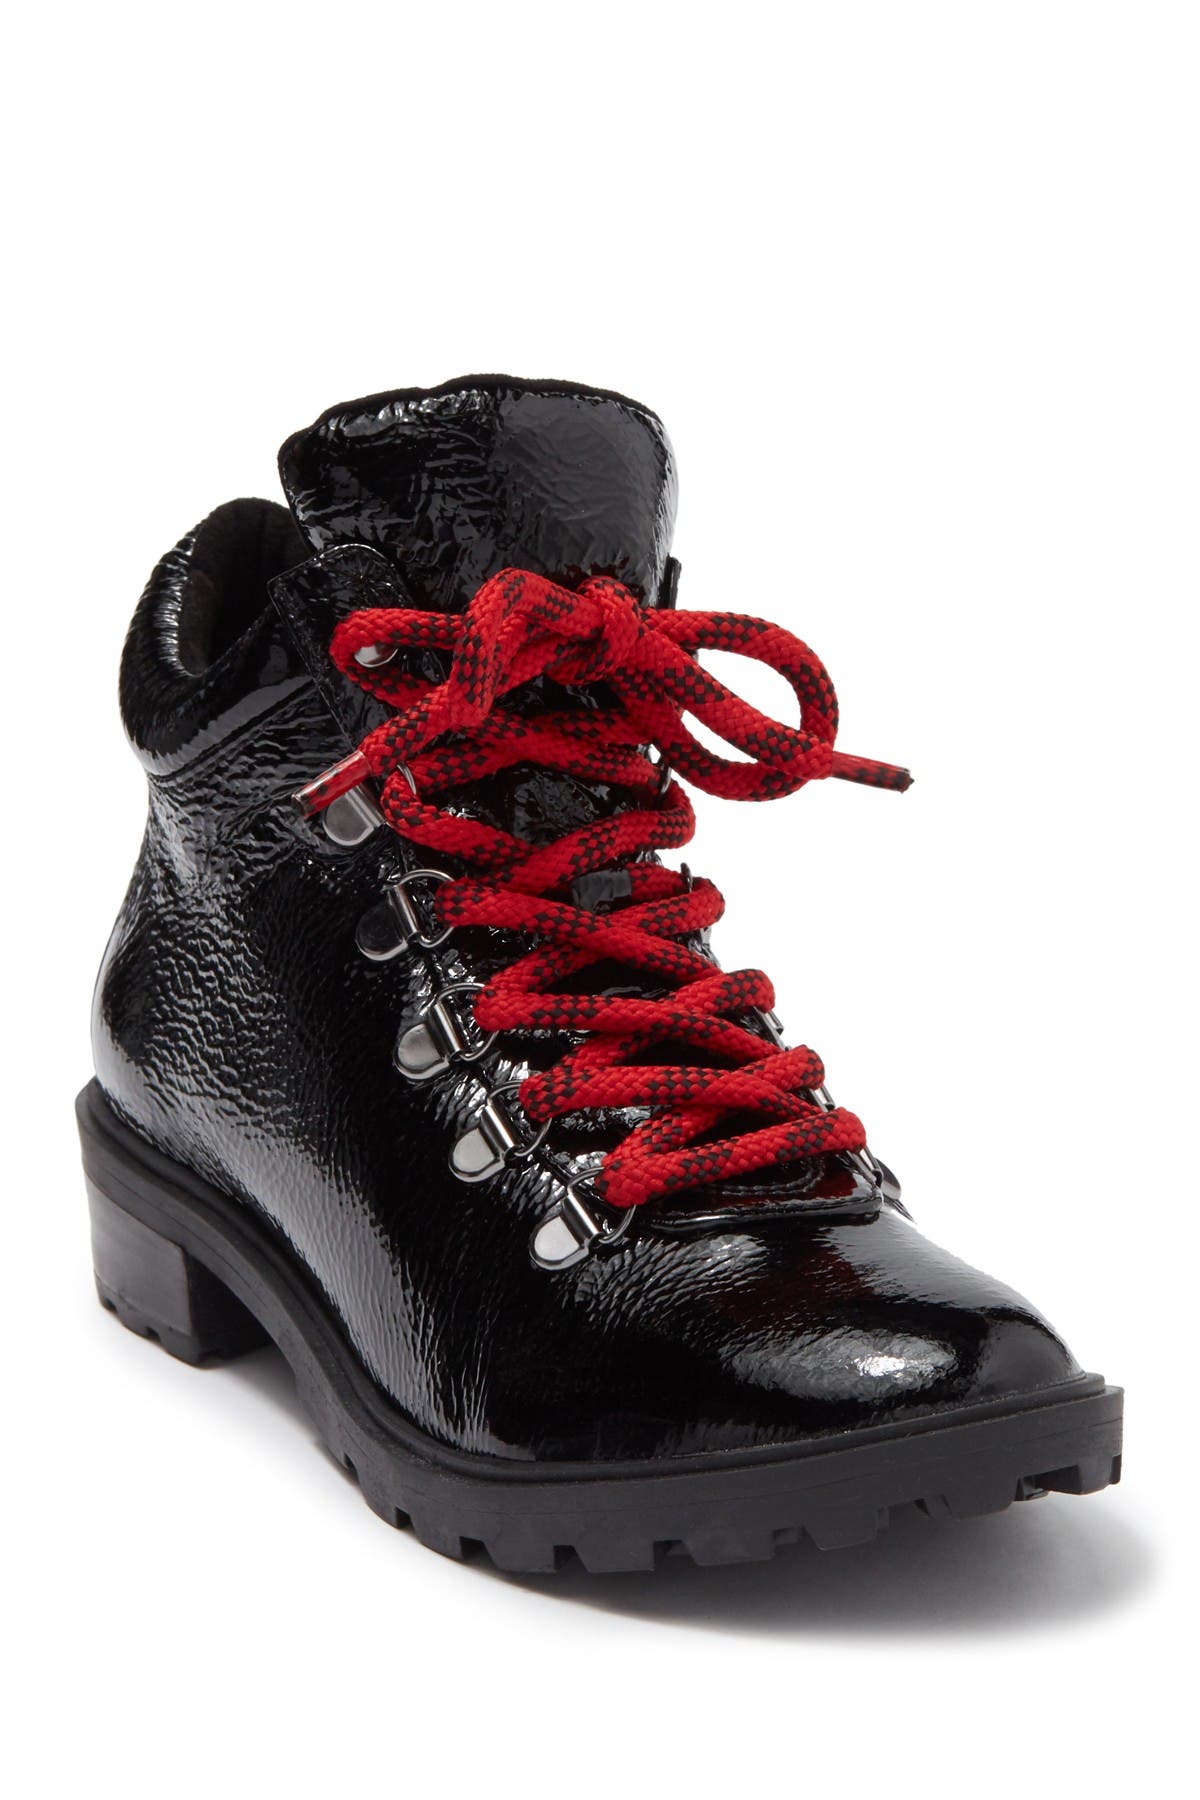 schutz red boots